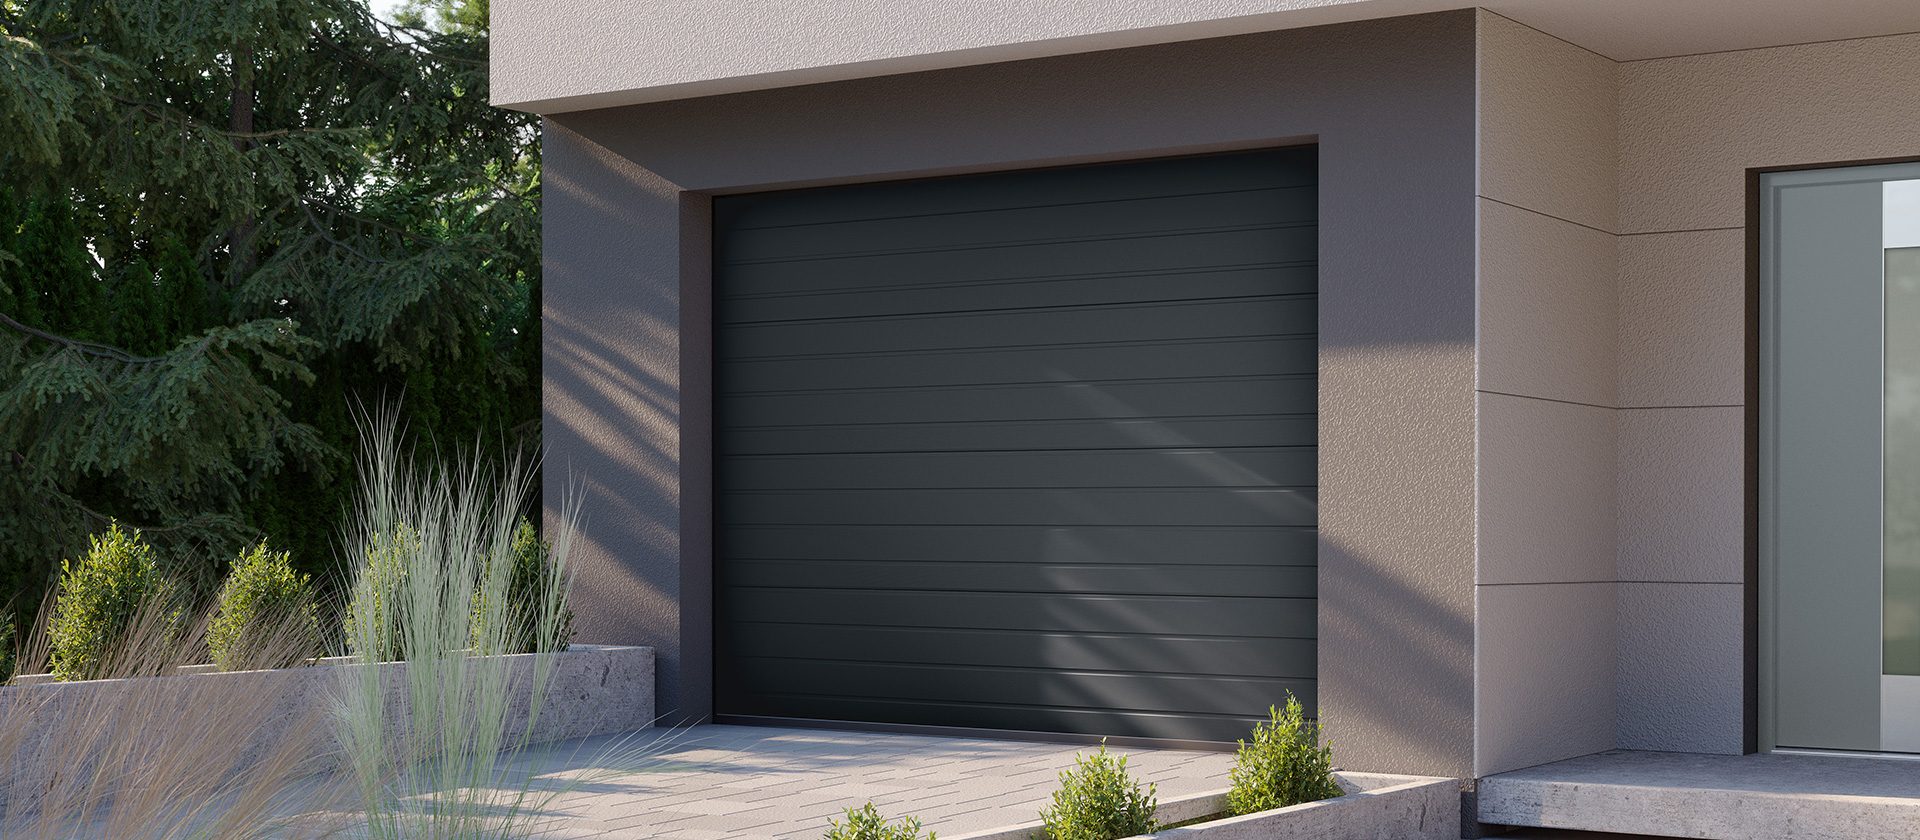 Brama garażowa – jak dopasować ją do budynku?